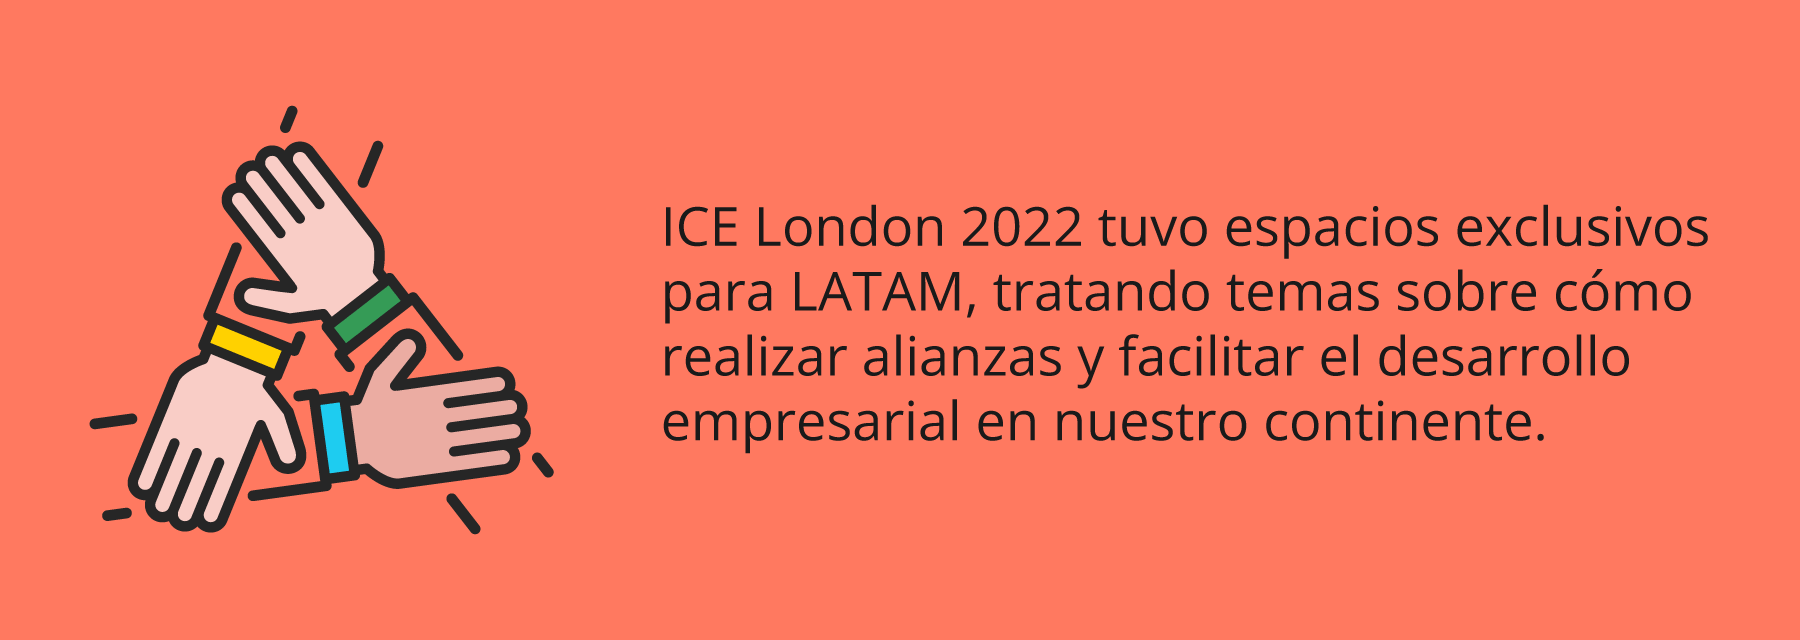 Regresa ICE London 2022 con increíbles espacios para LATAM